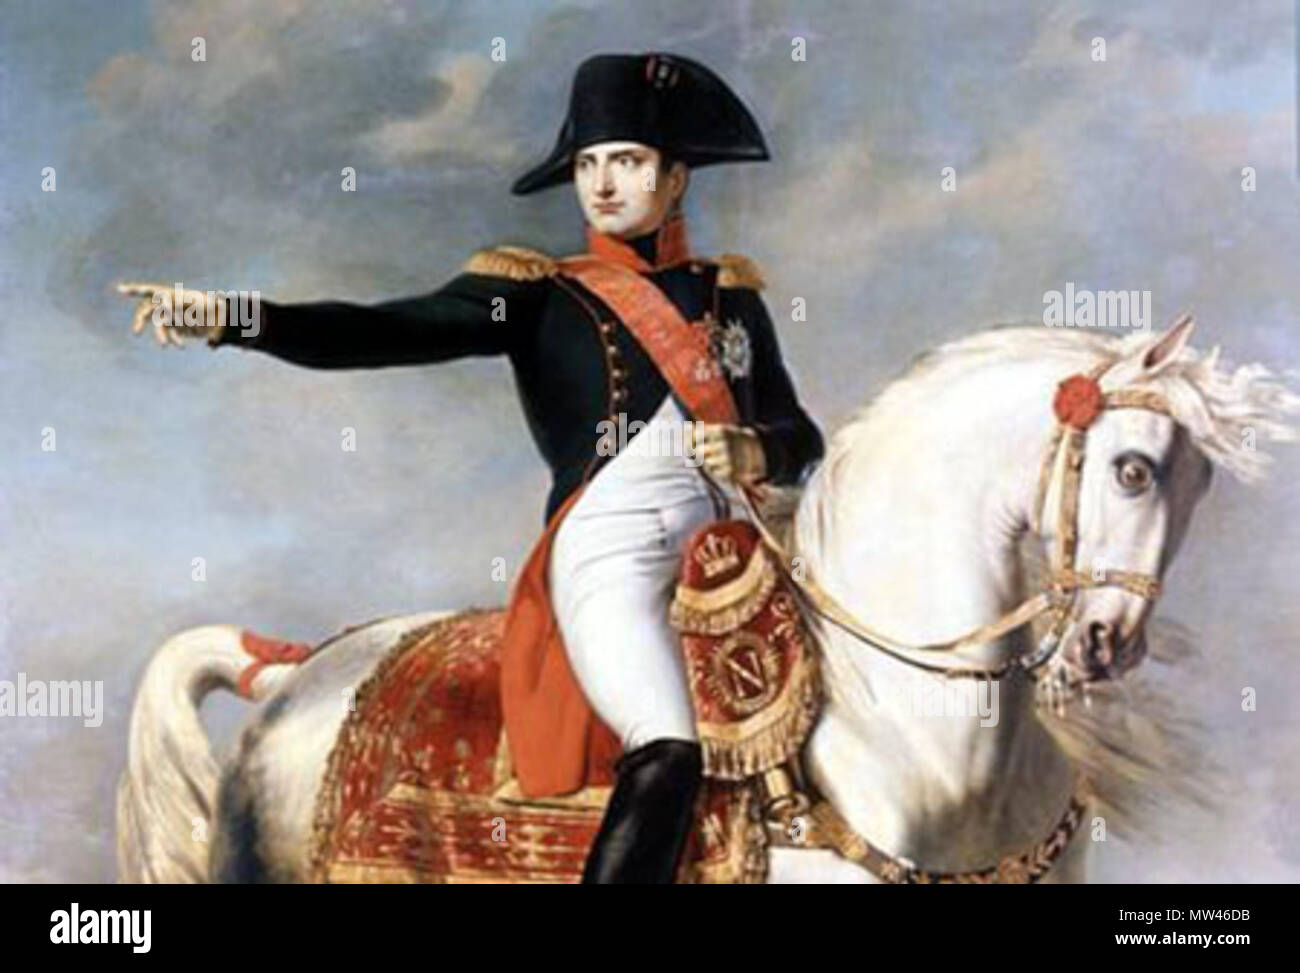 . Inglés: Napoleón Bonaparte Italiano: L'Imperatore Napoleone . Siglo xix 437 Napoleone Bonaparte Foto de stock